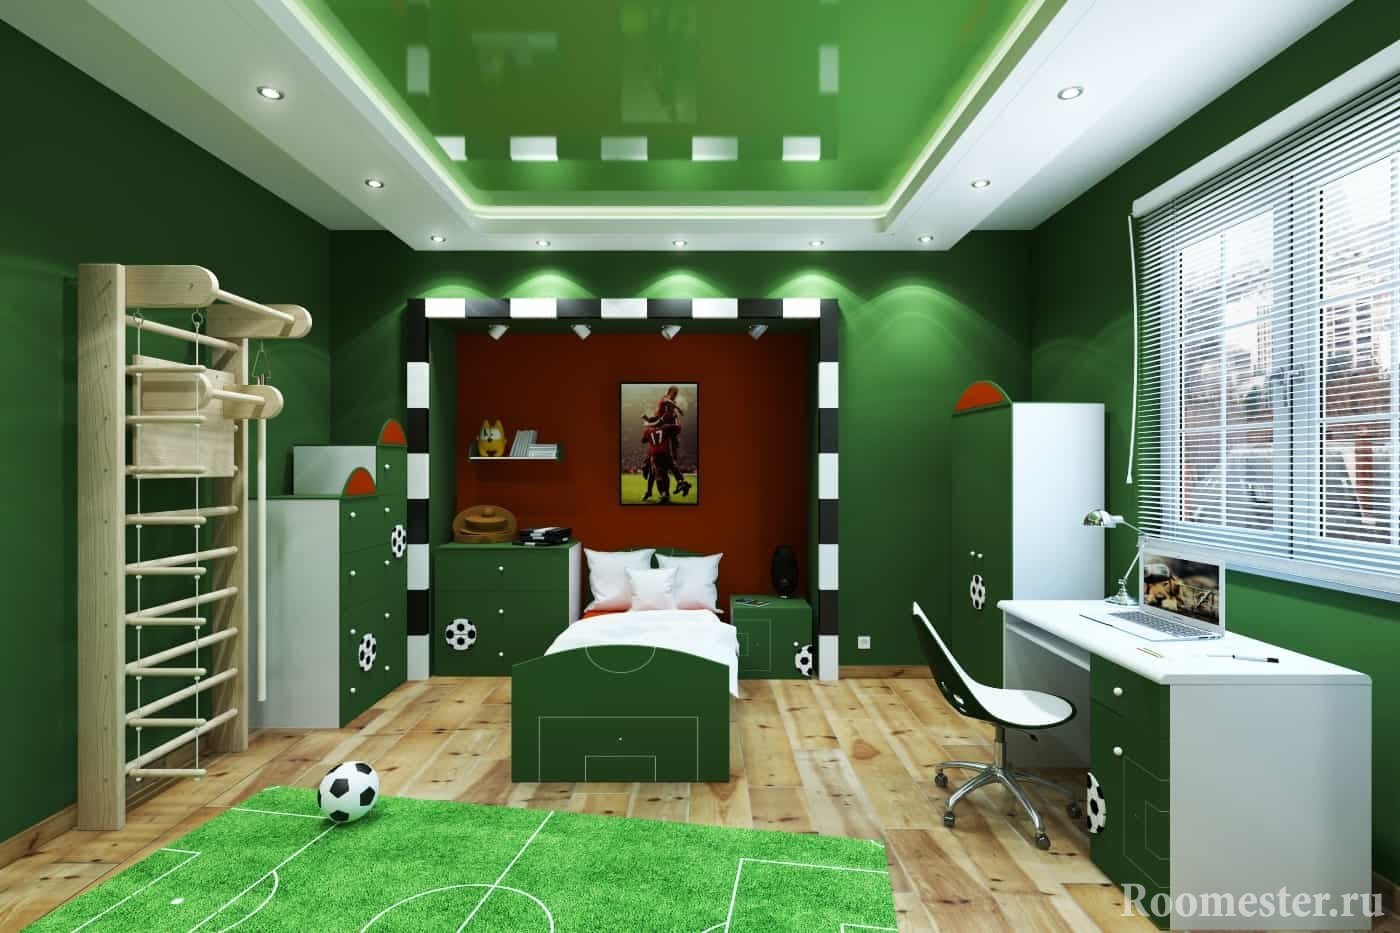 Зеленая комната - футбольное поле